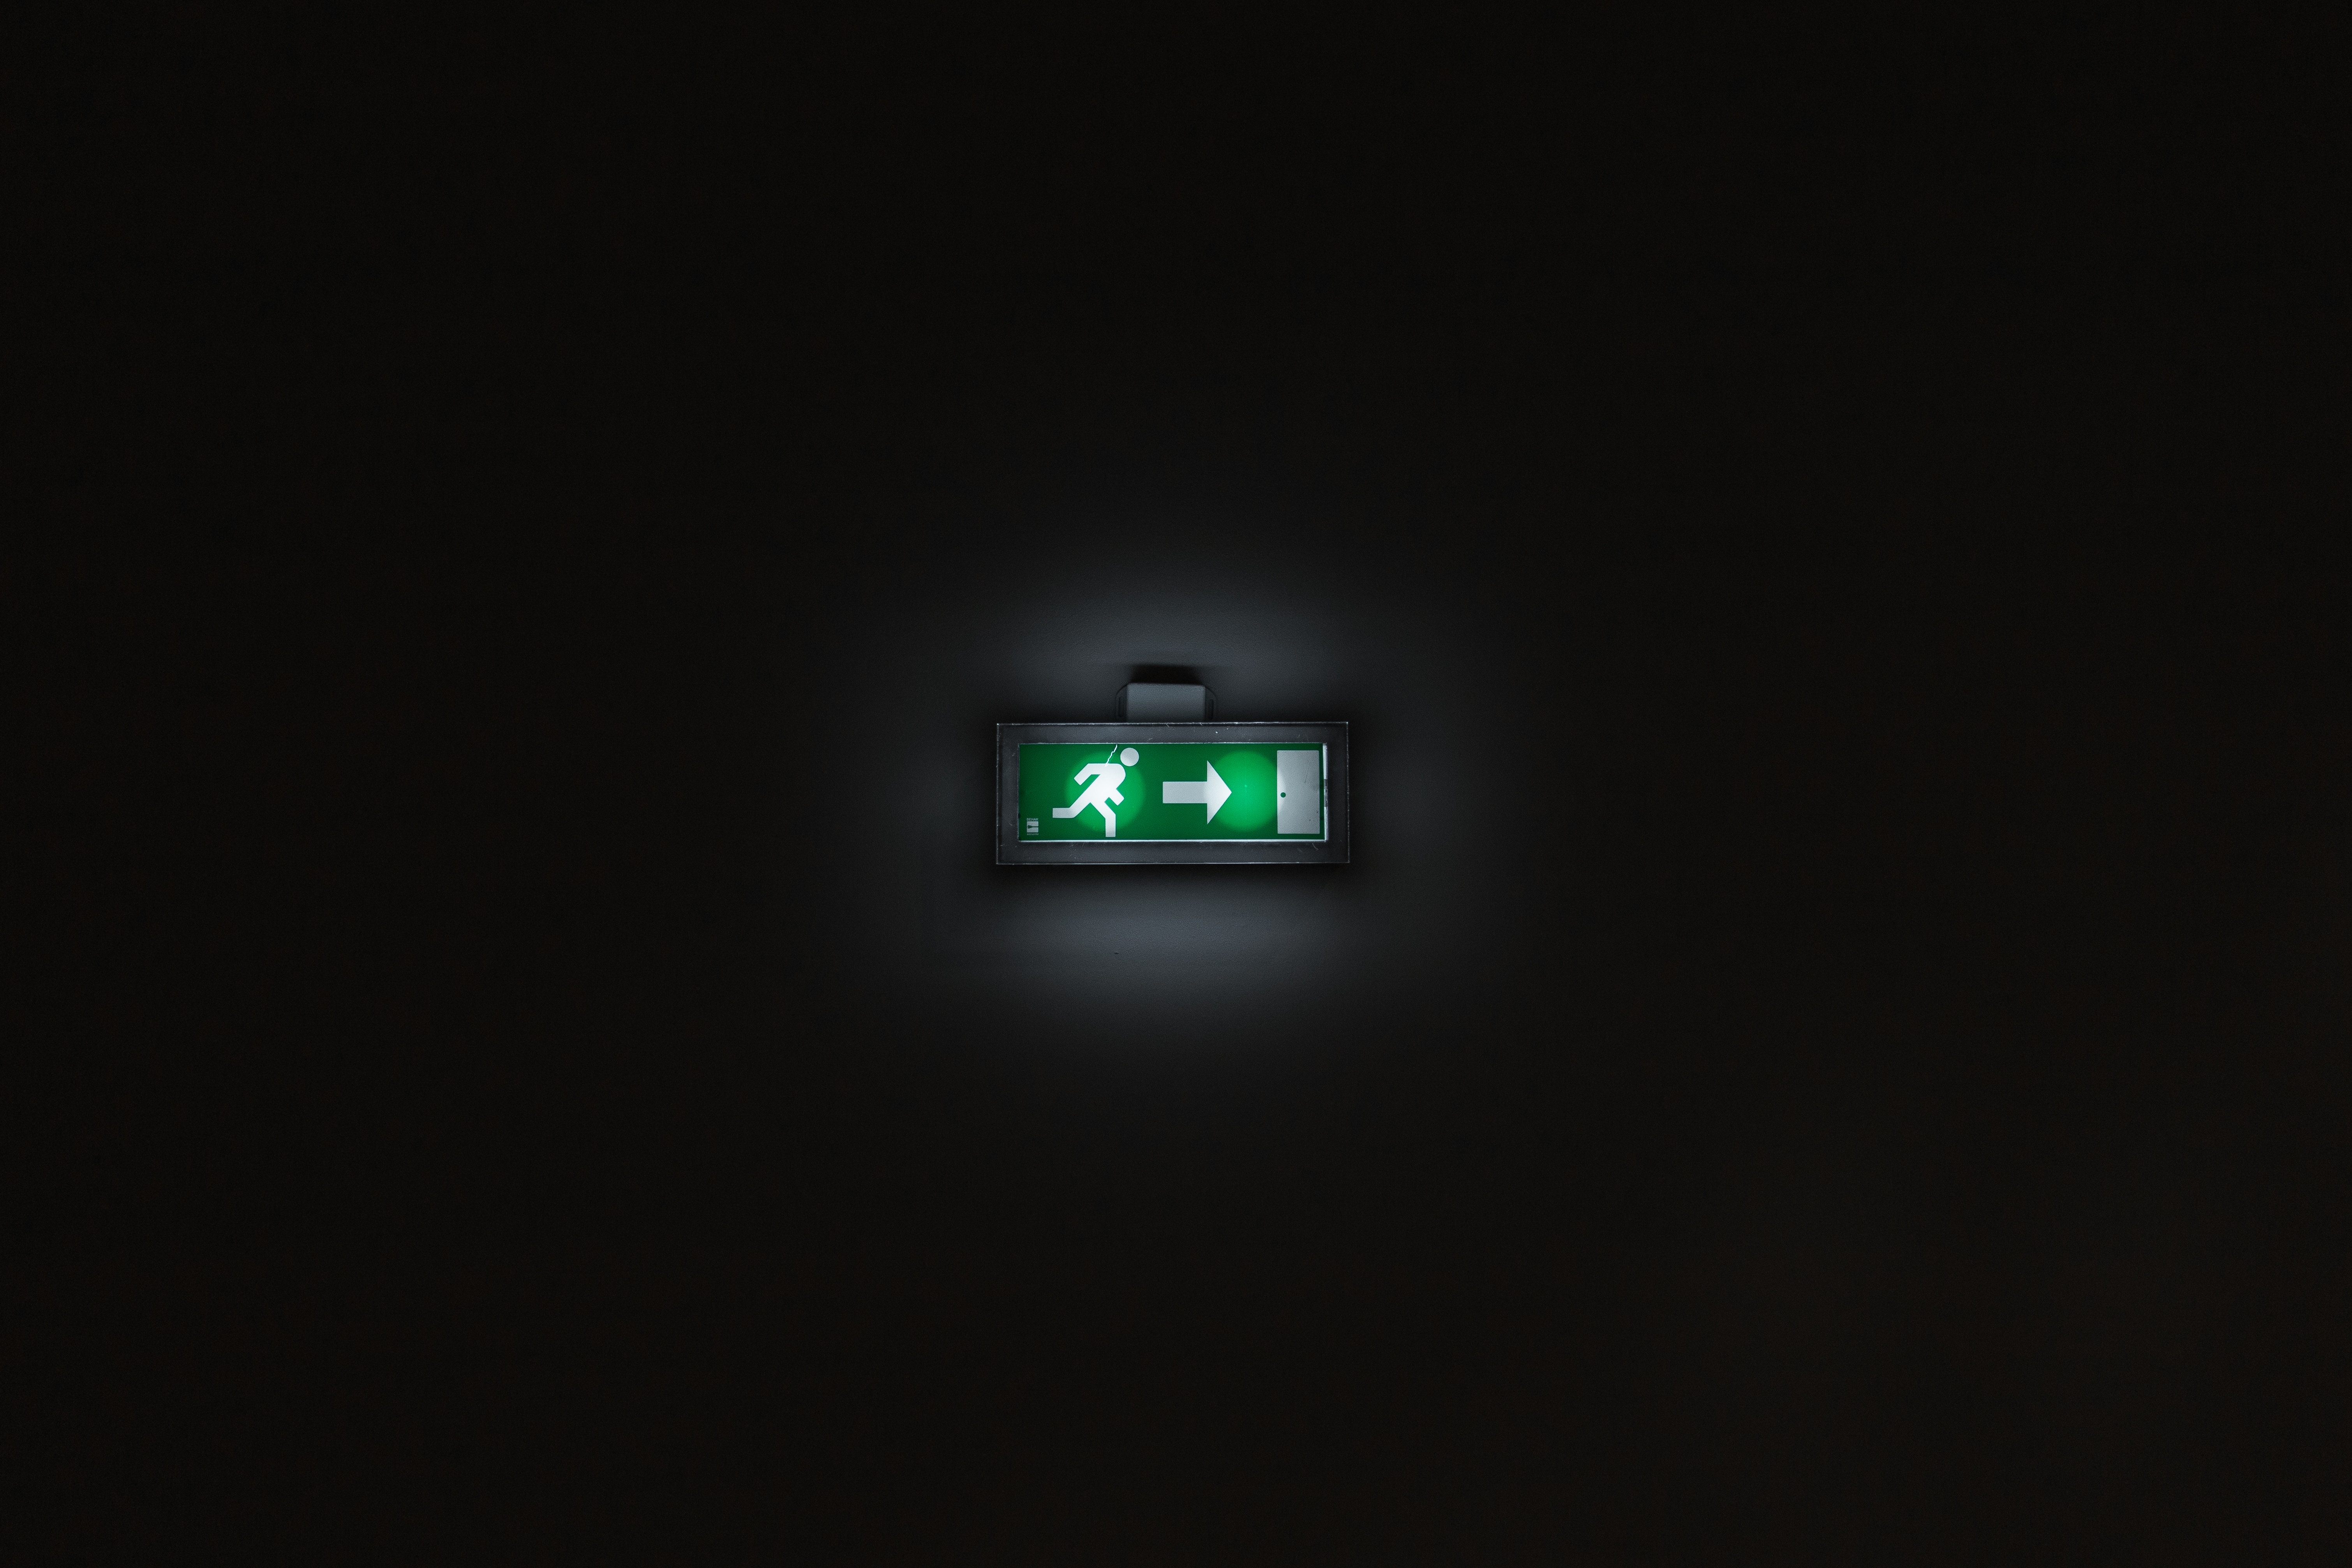 backlight, dark, illumination, pointer, sign, output, exit